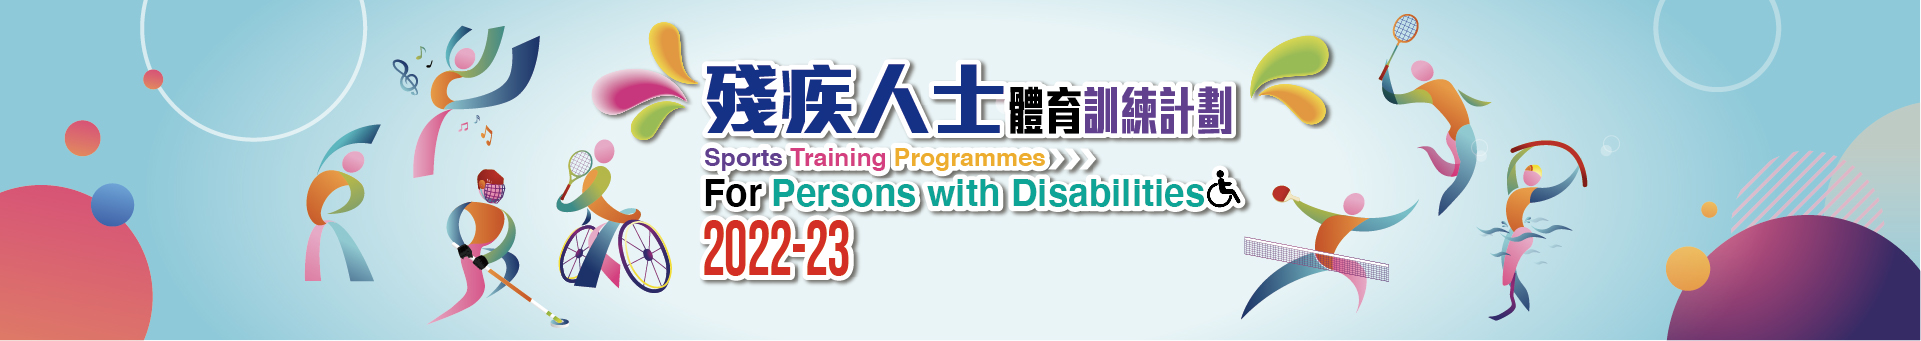 殘疾人士體育訓練計劃2022-23